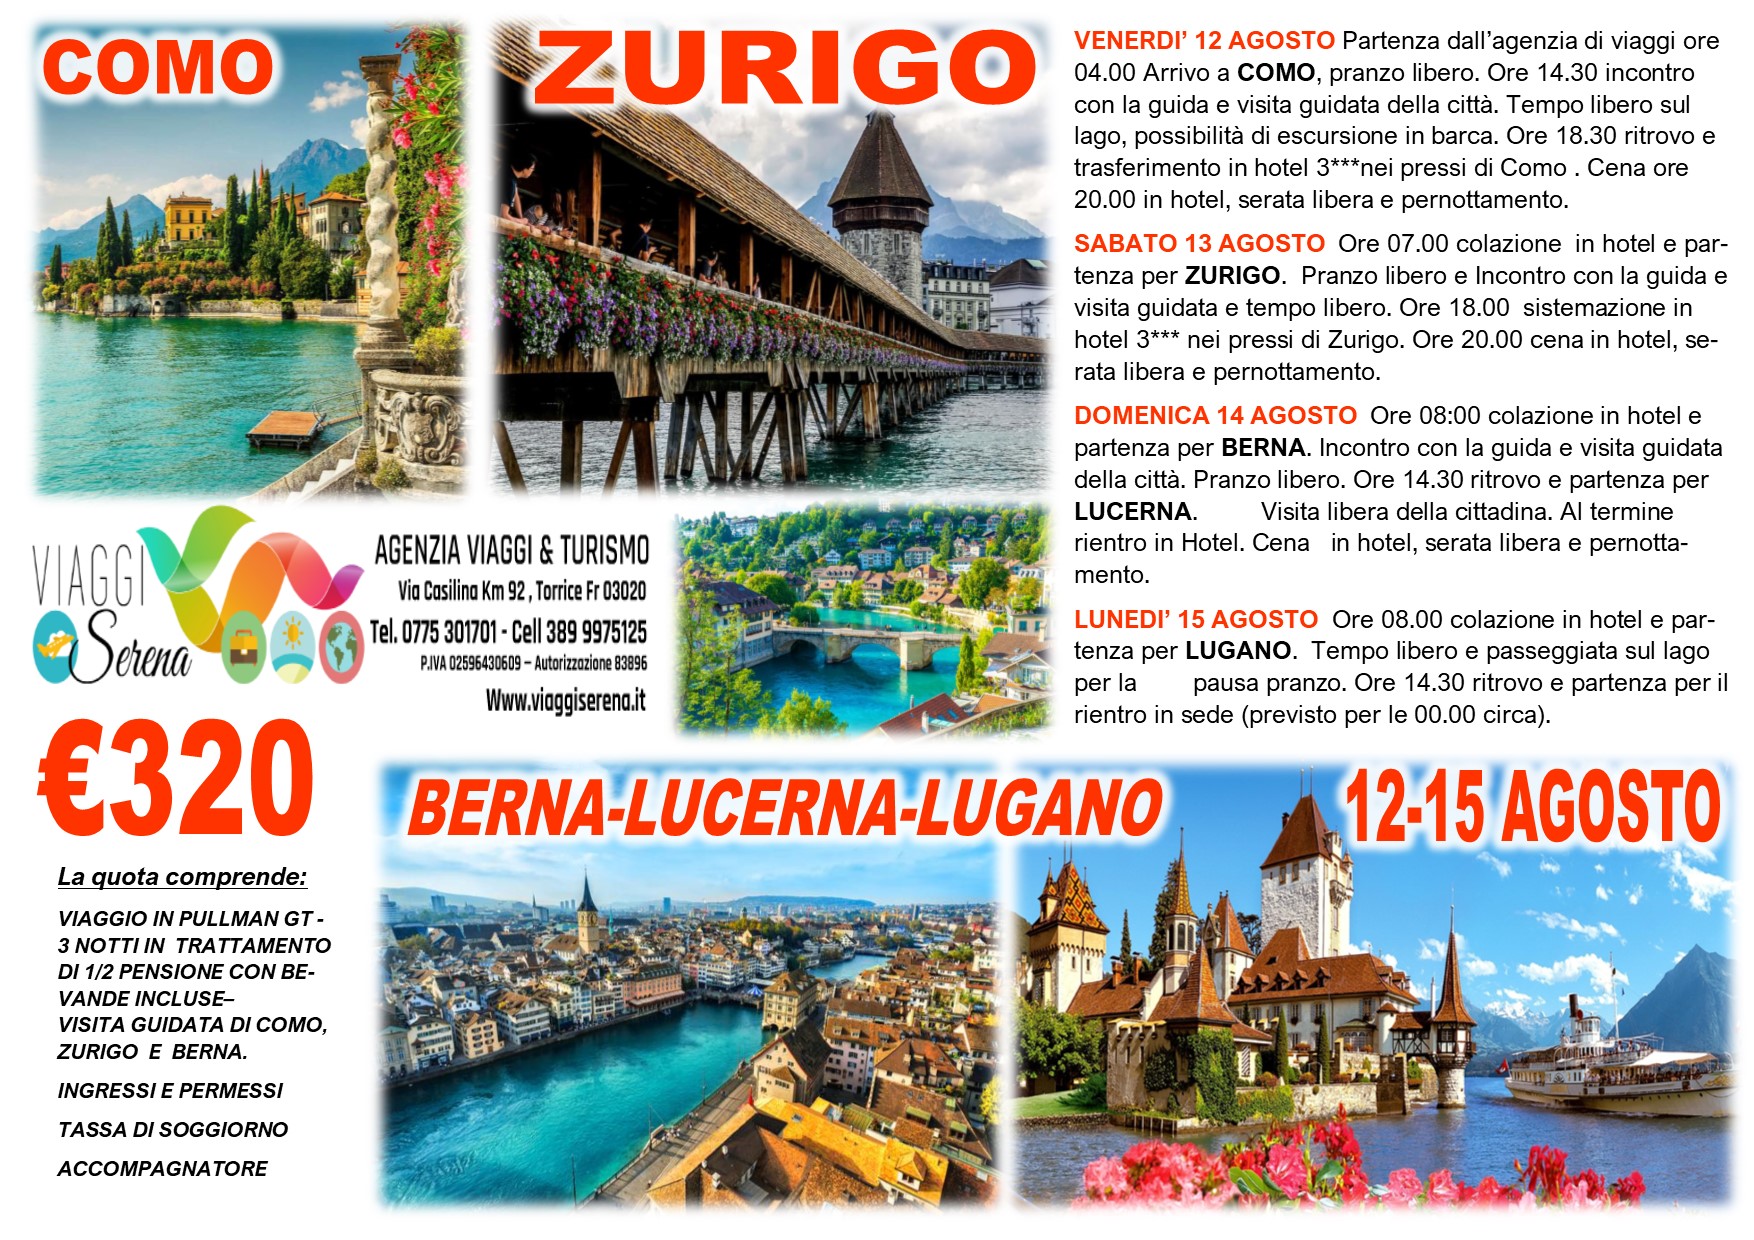 Viaggi di Gruppo: Zurigo, Lucerna , Lugano, Berna & Como 12-15 Agosto  €320,00